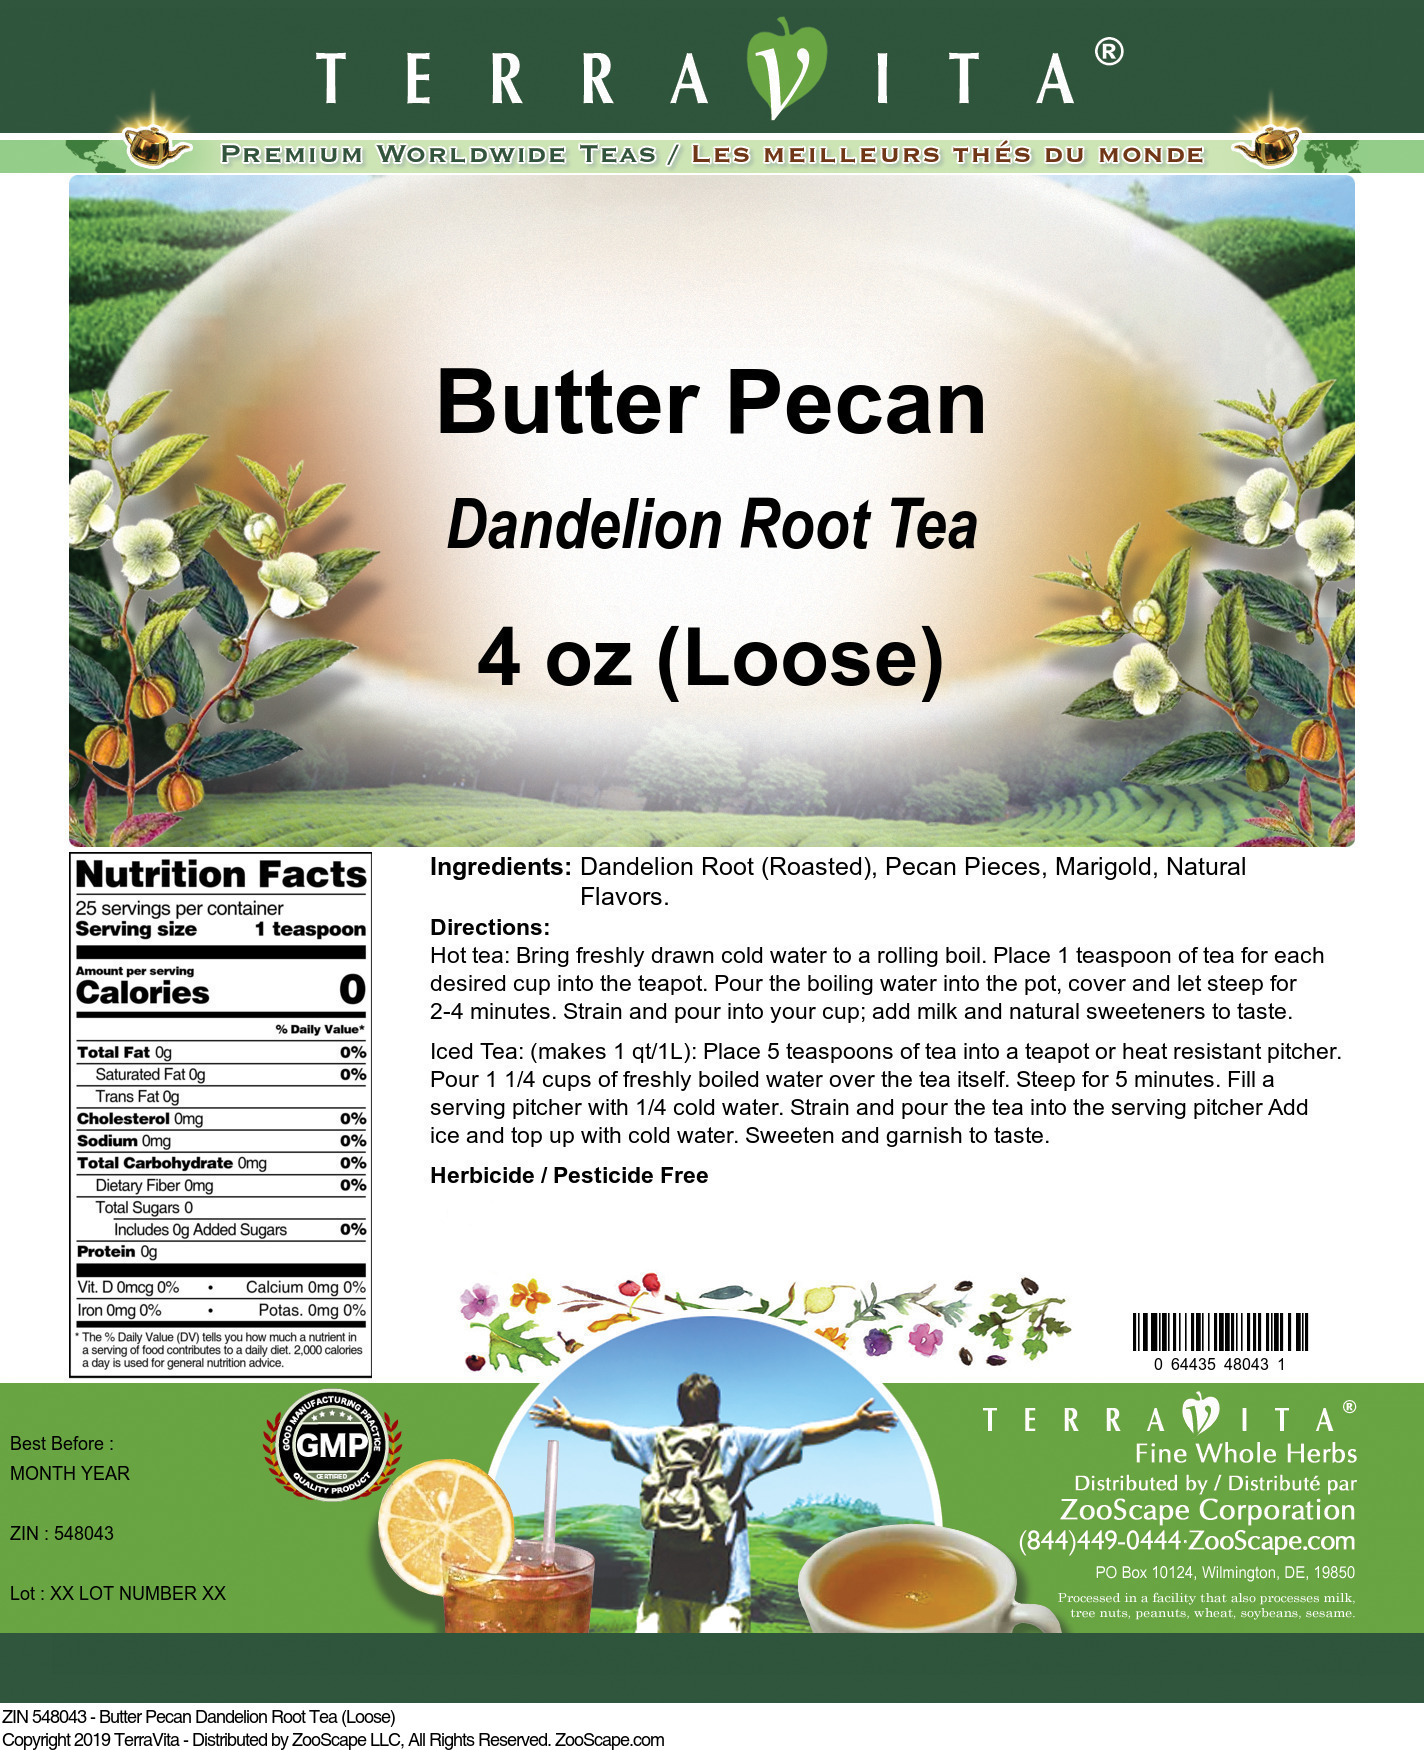 Butter Pecan Dandelion Root Tea (Loose) - Label